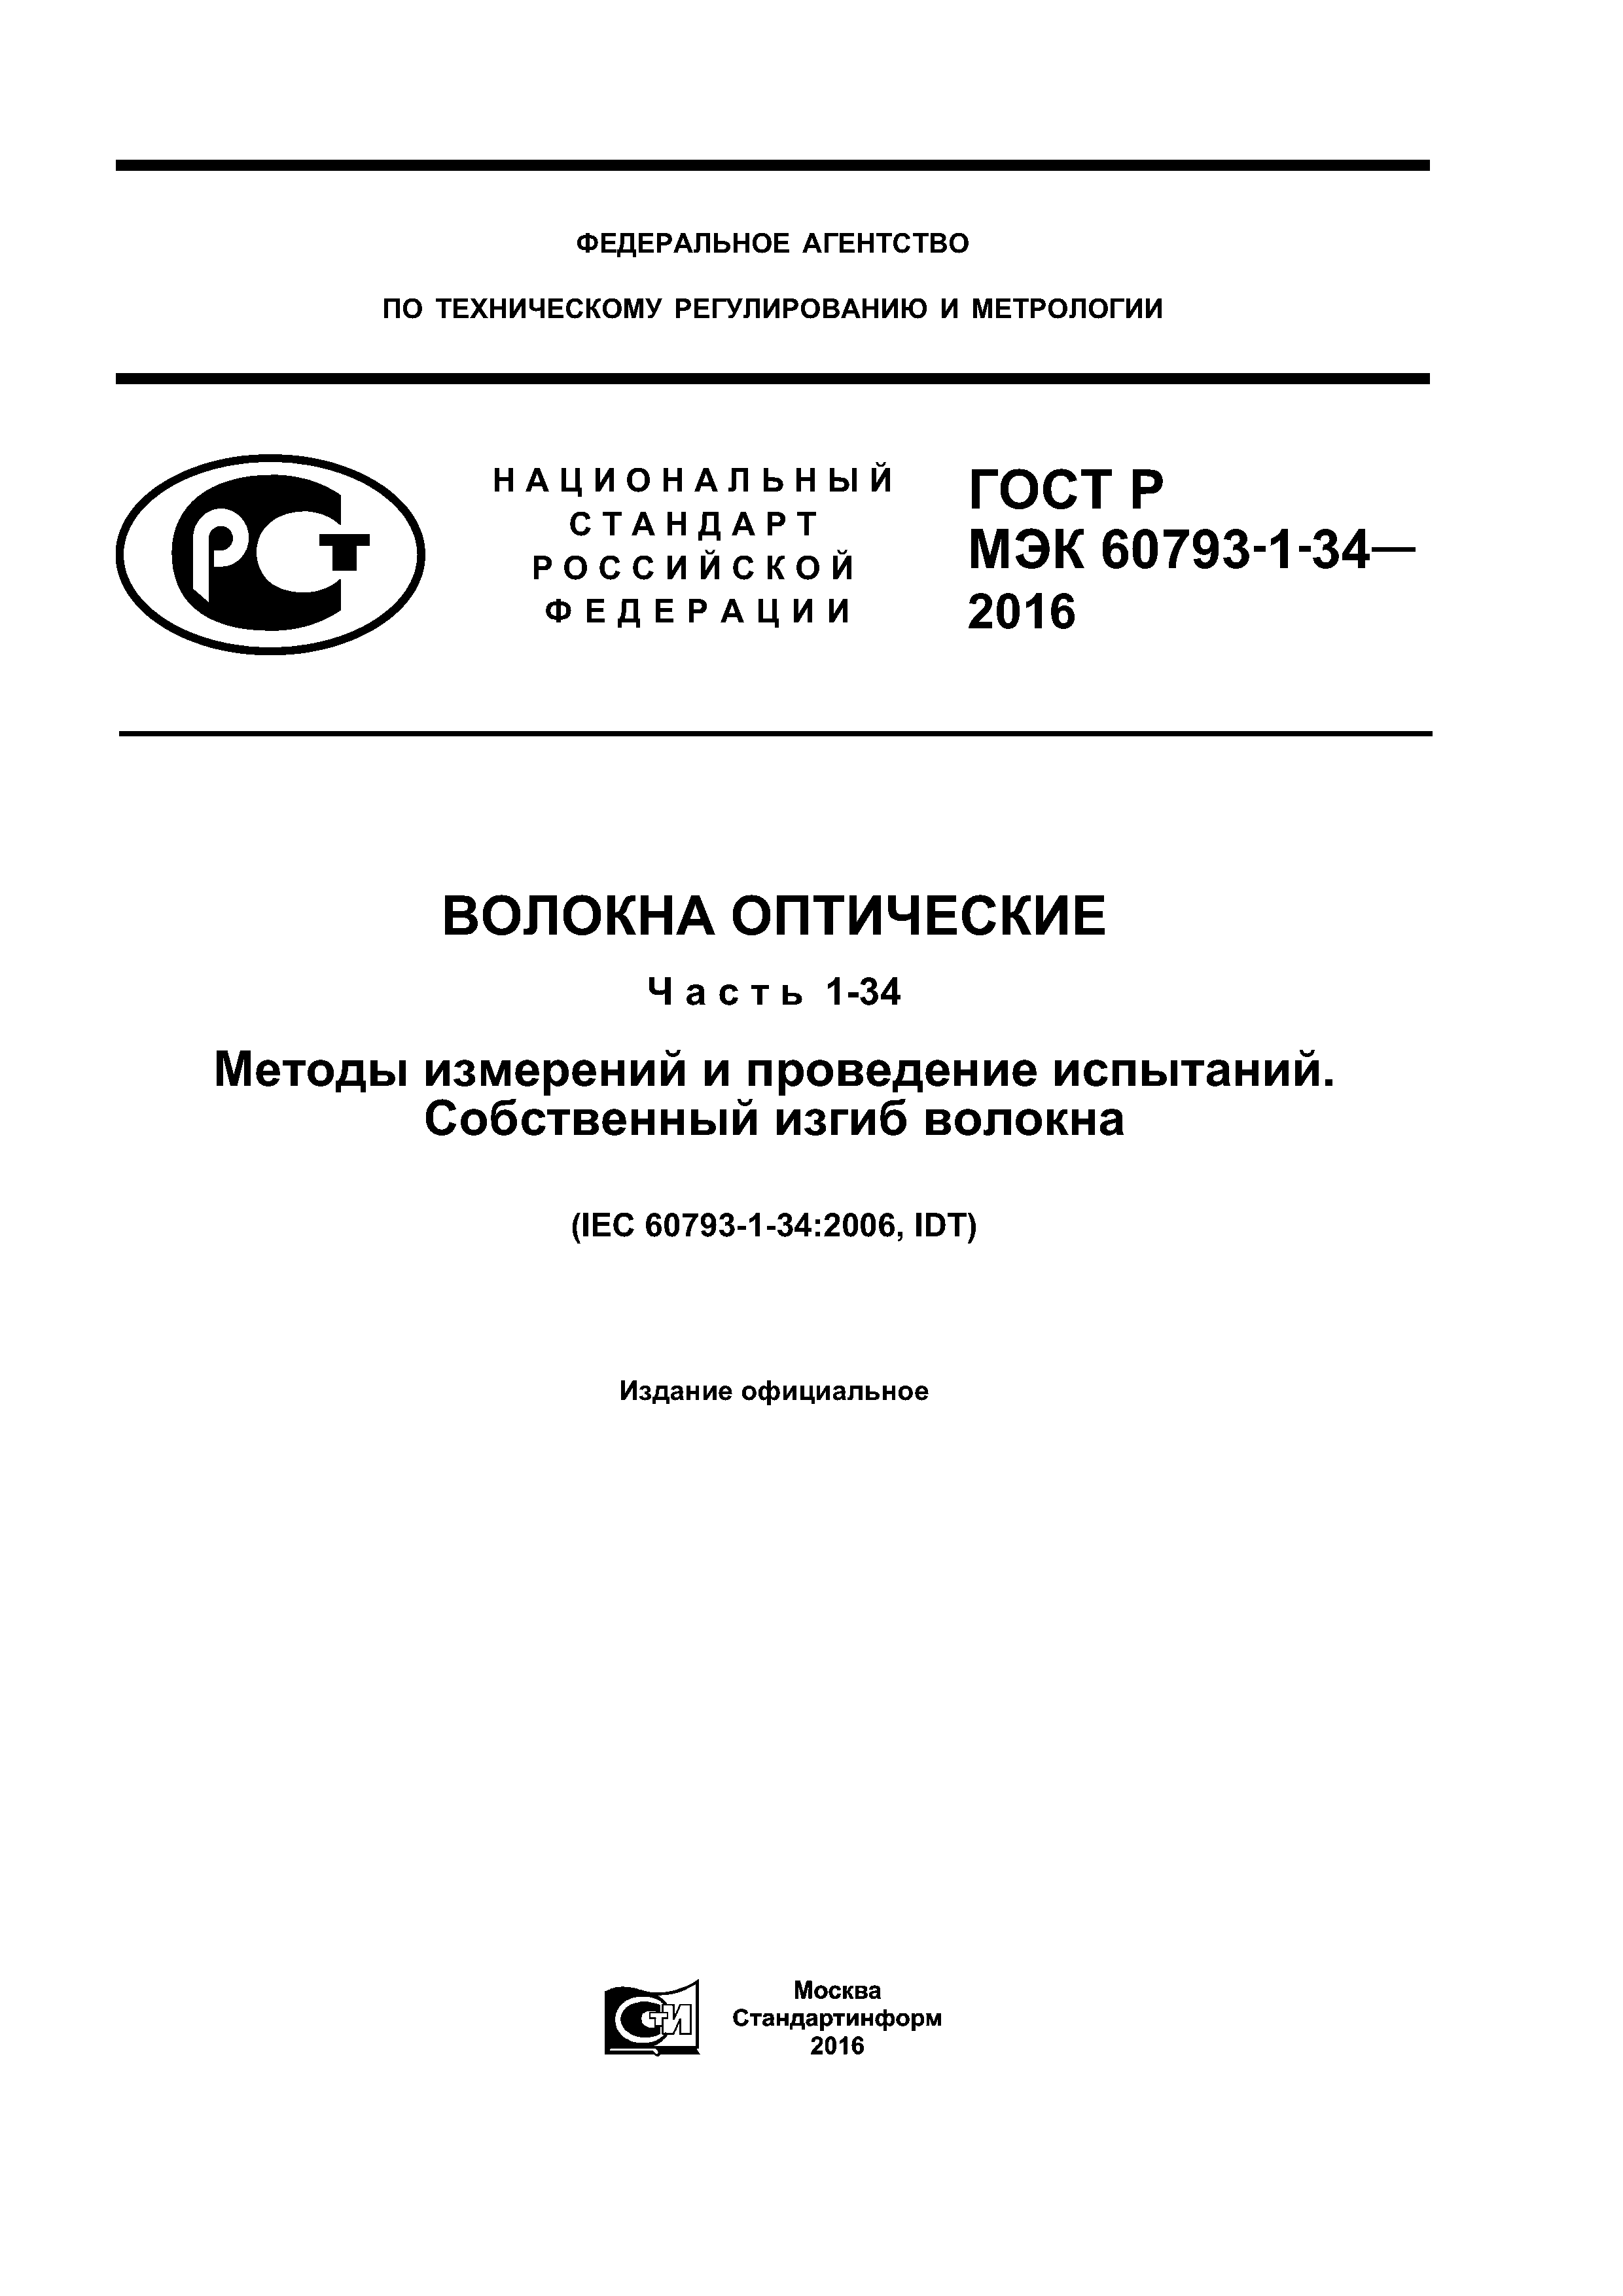 ГОСТ Р МЭК 60793-1-34-2016